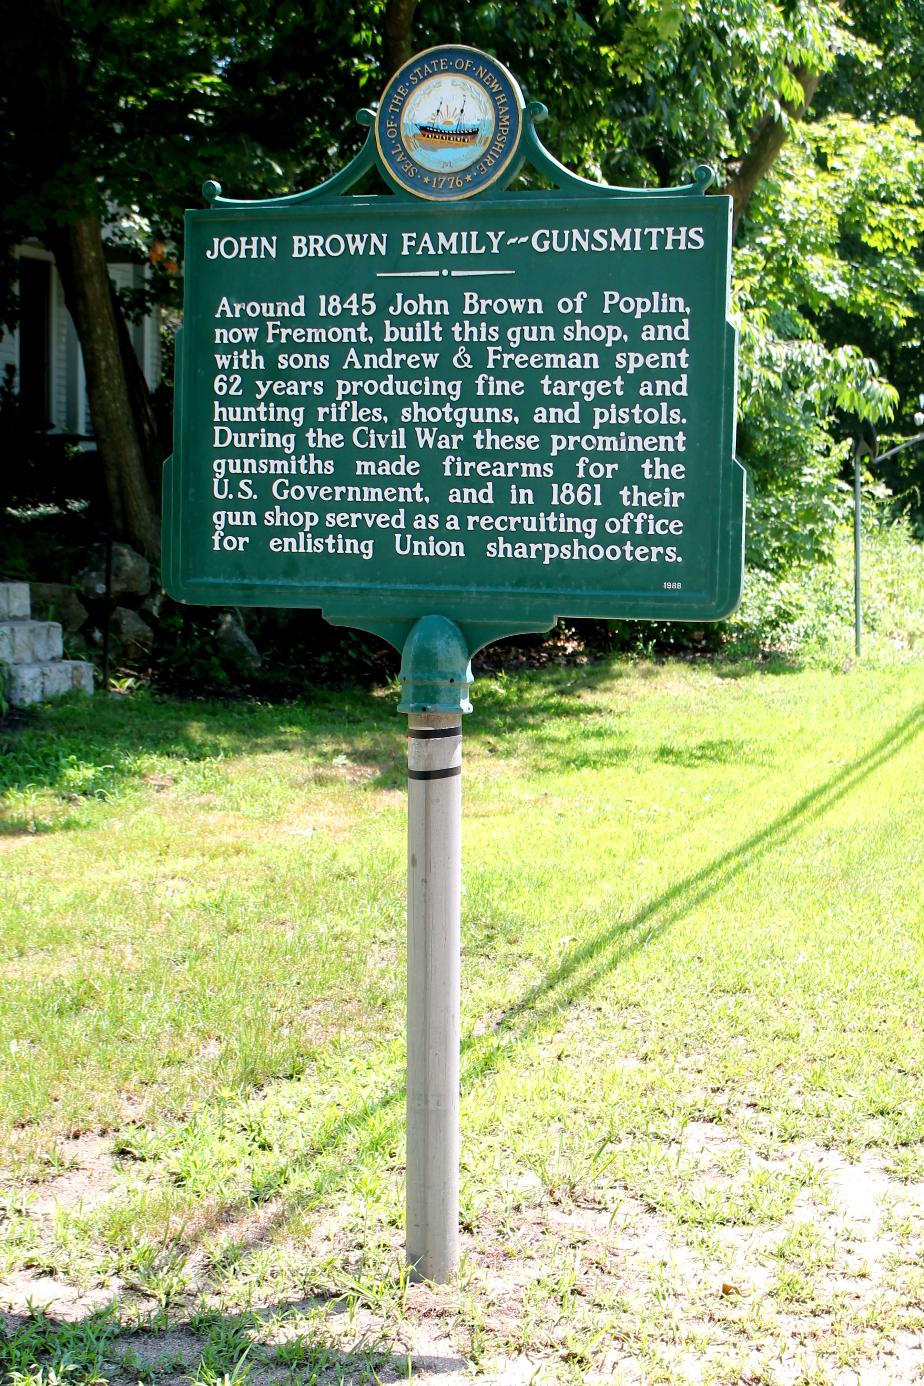 John Brown Family Gunsmiths - Historical Marker - Poplin/Fremont New Hampshire